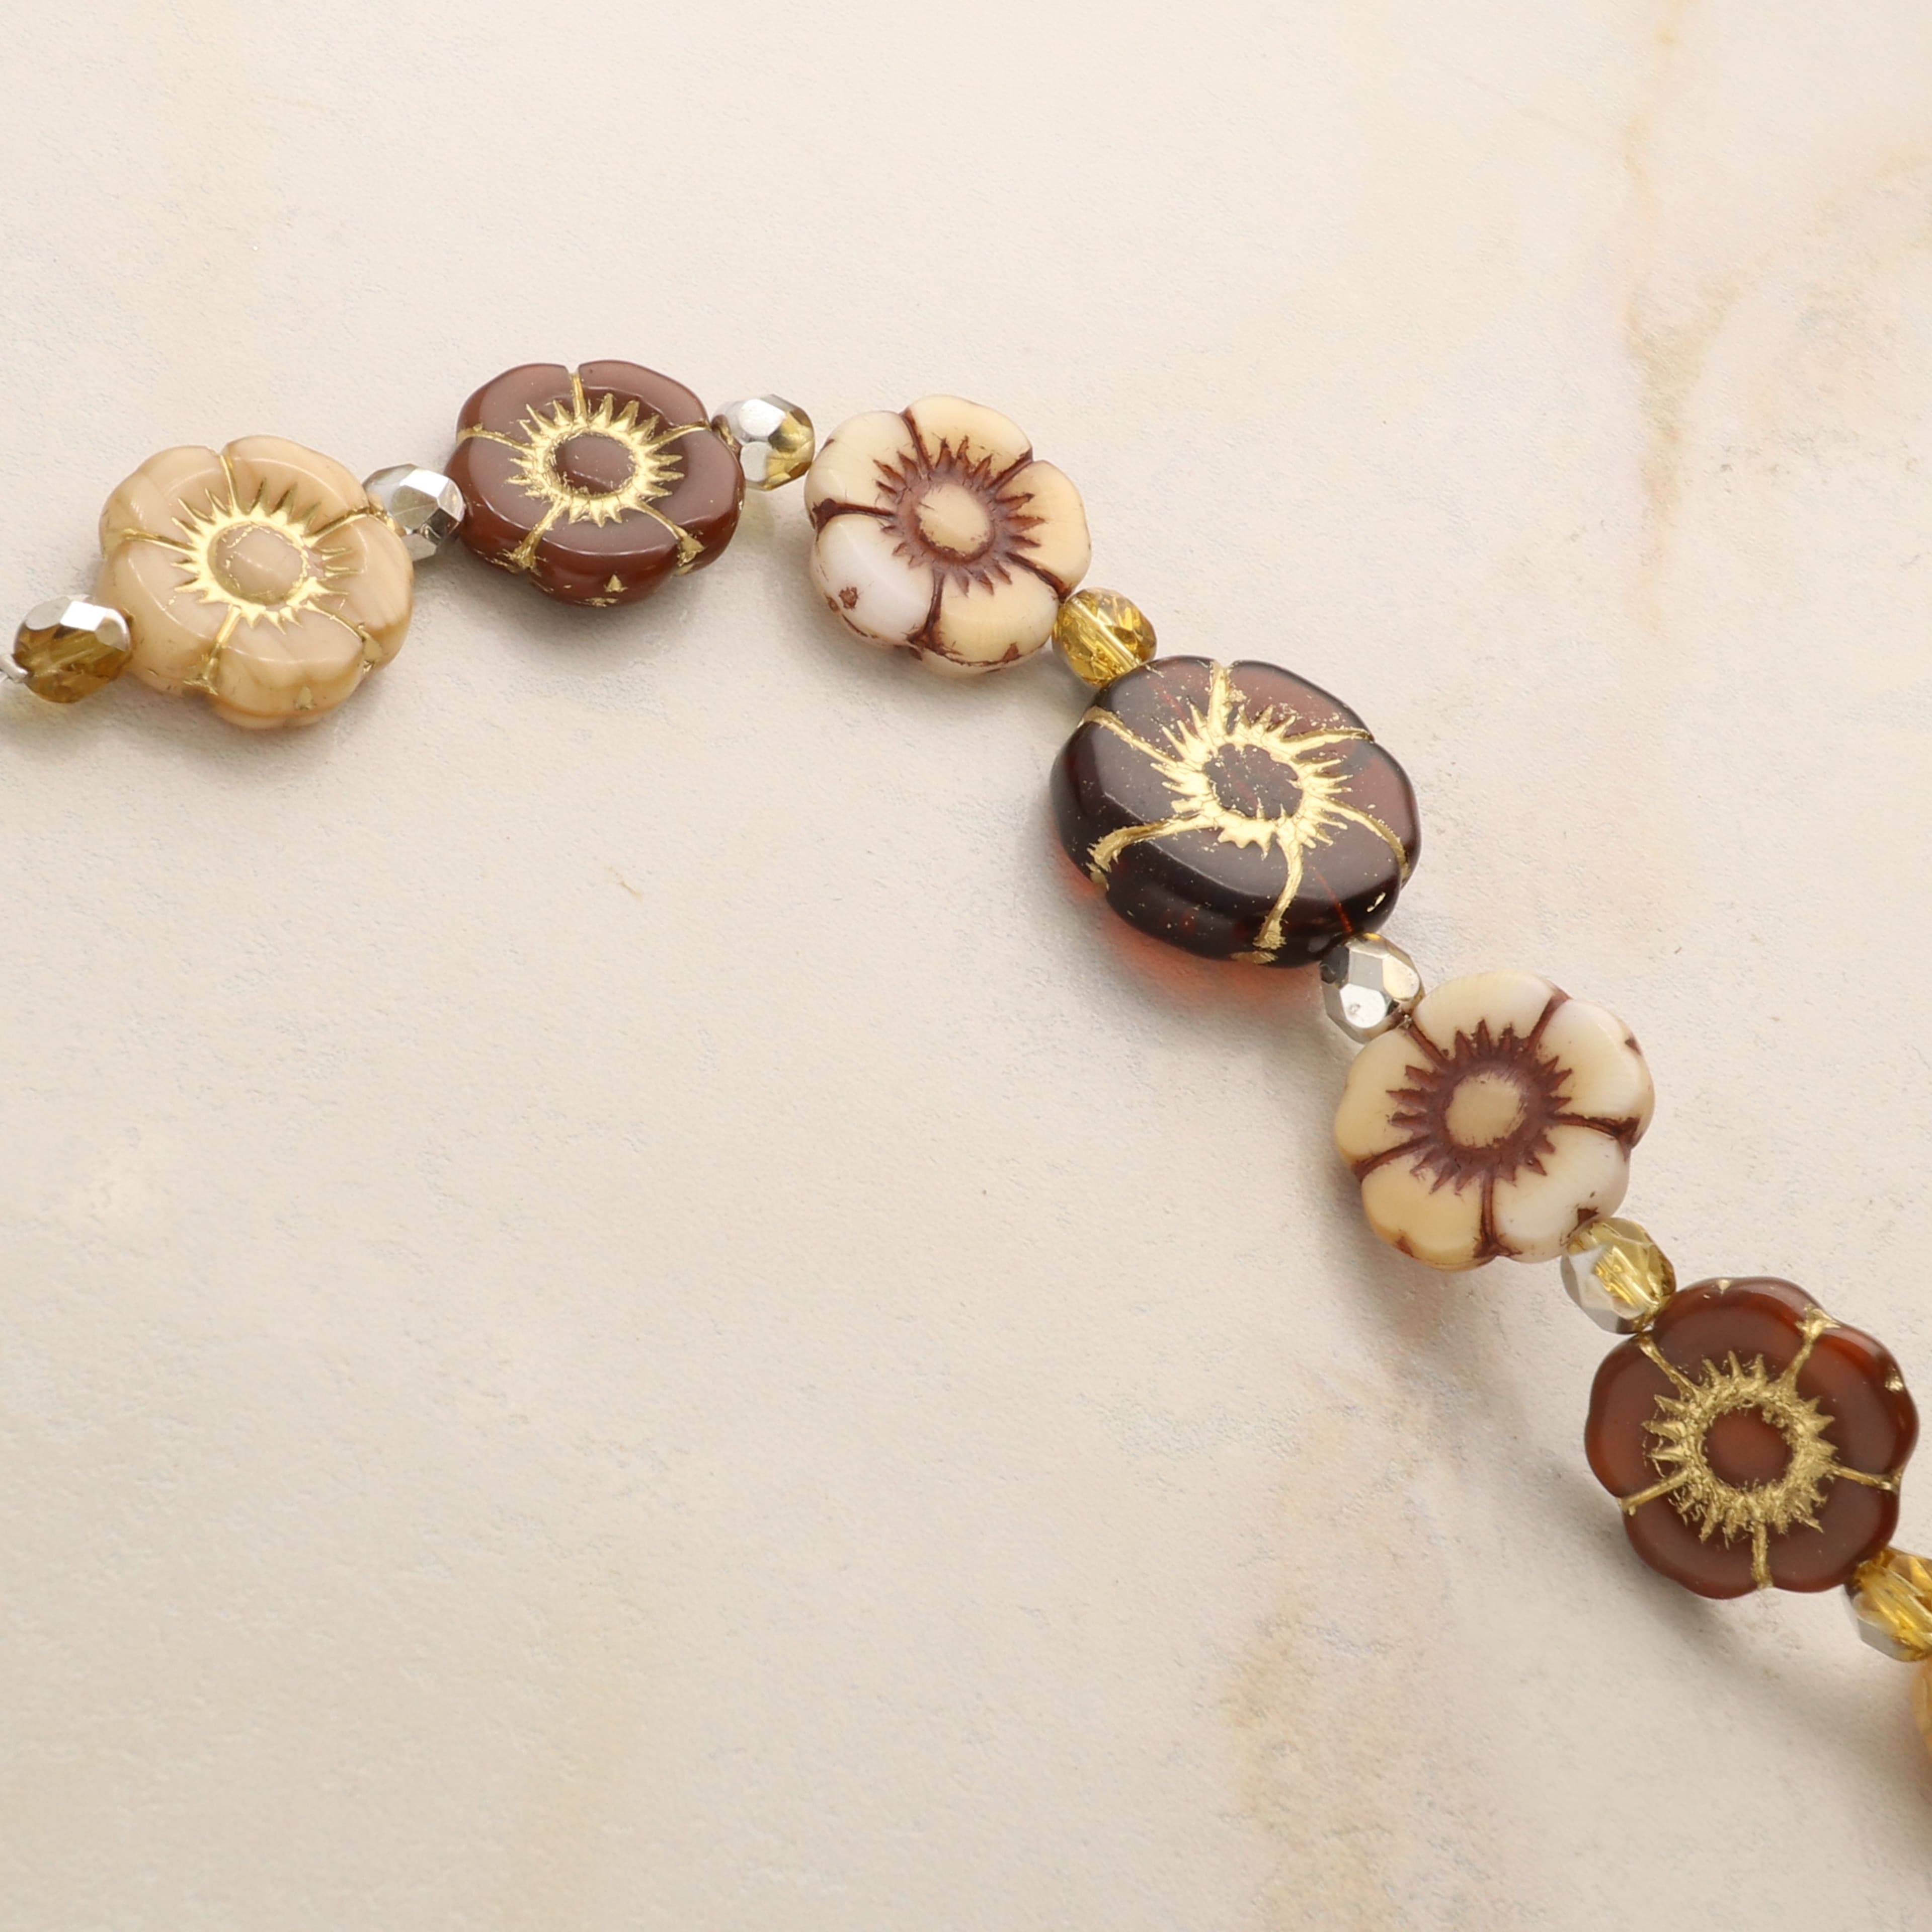 6 Packs: 15 ct. (90 total) Honey Autumn Czech Glass Flower Bead Mix by Bead Landing&#x2122;